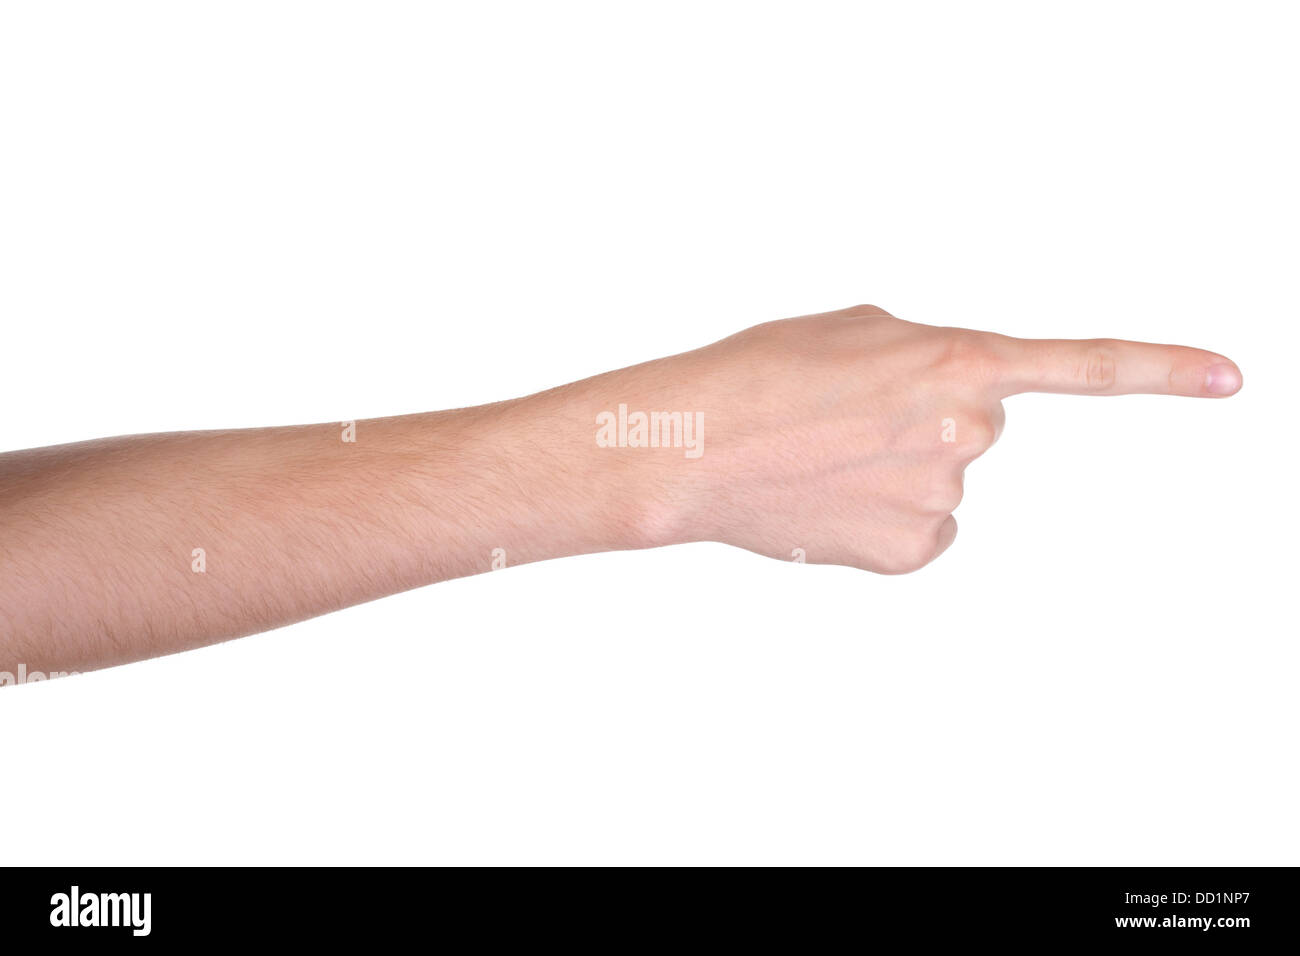 Puntamento a mano, toccando o pressatura, isolati su sfondo bianco Foto Stock